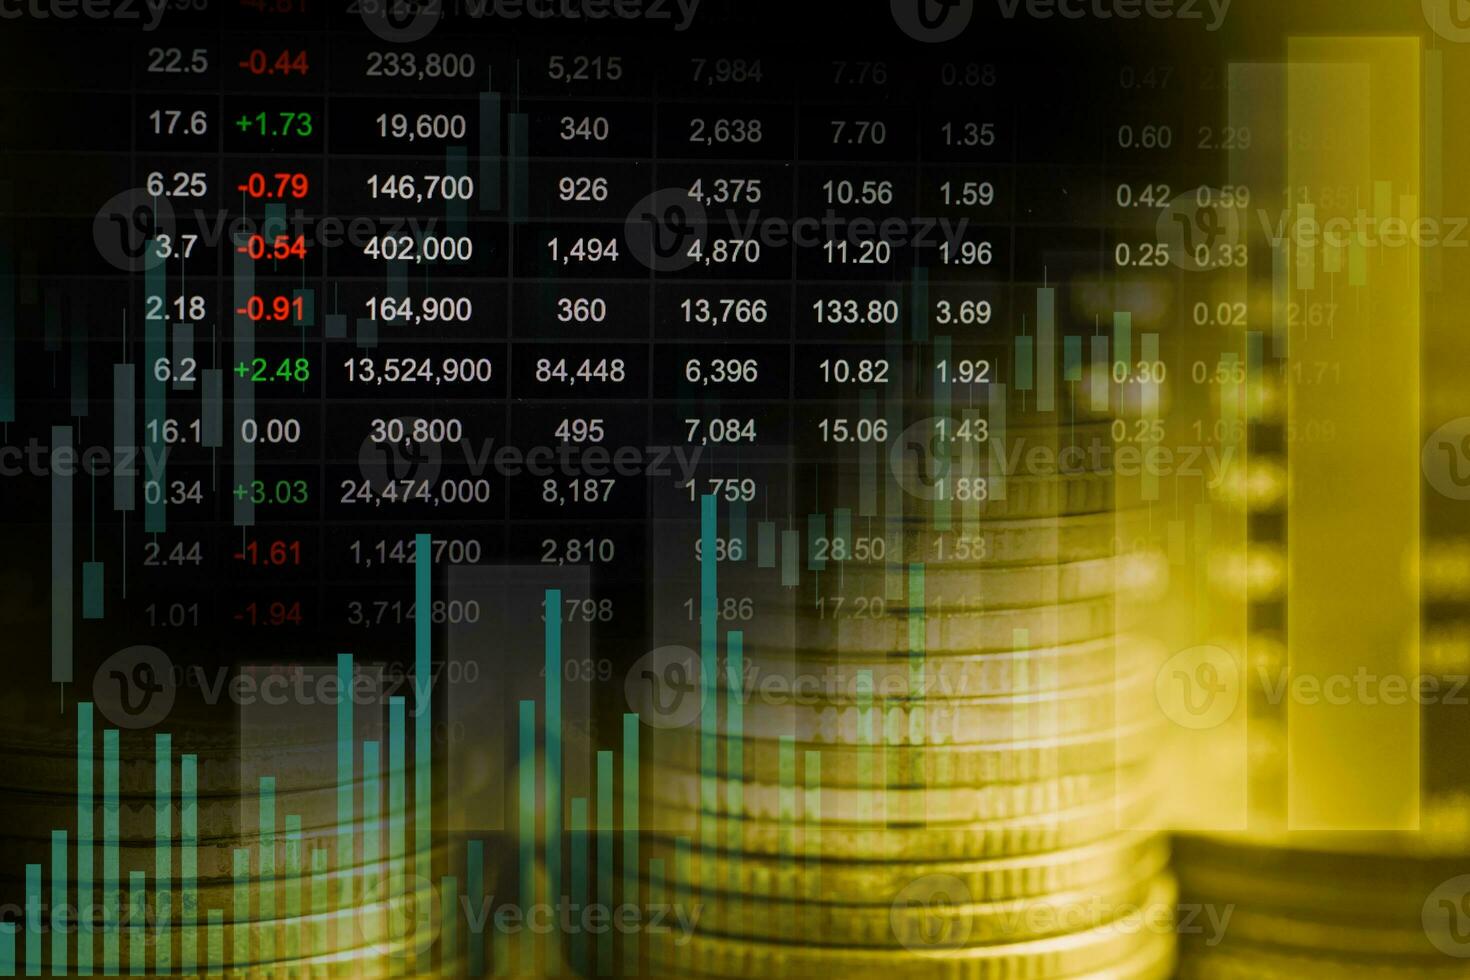 affari finanziari del mercato azionario, tecnologia digitale del grafico di tendenza dell'economia. foto